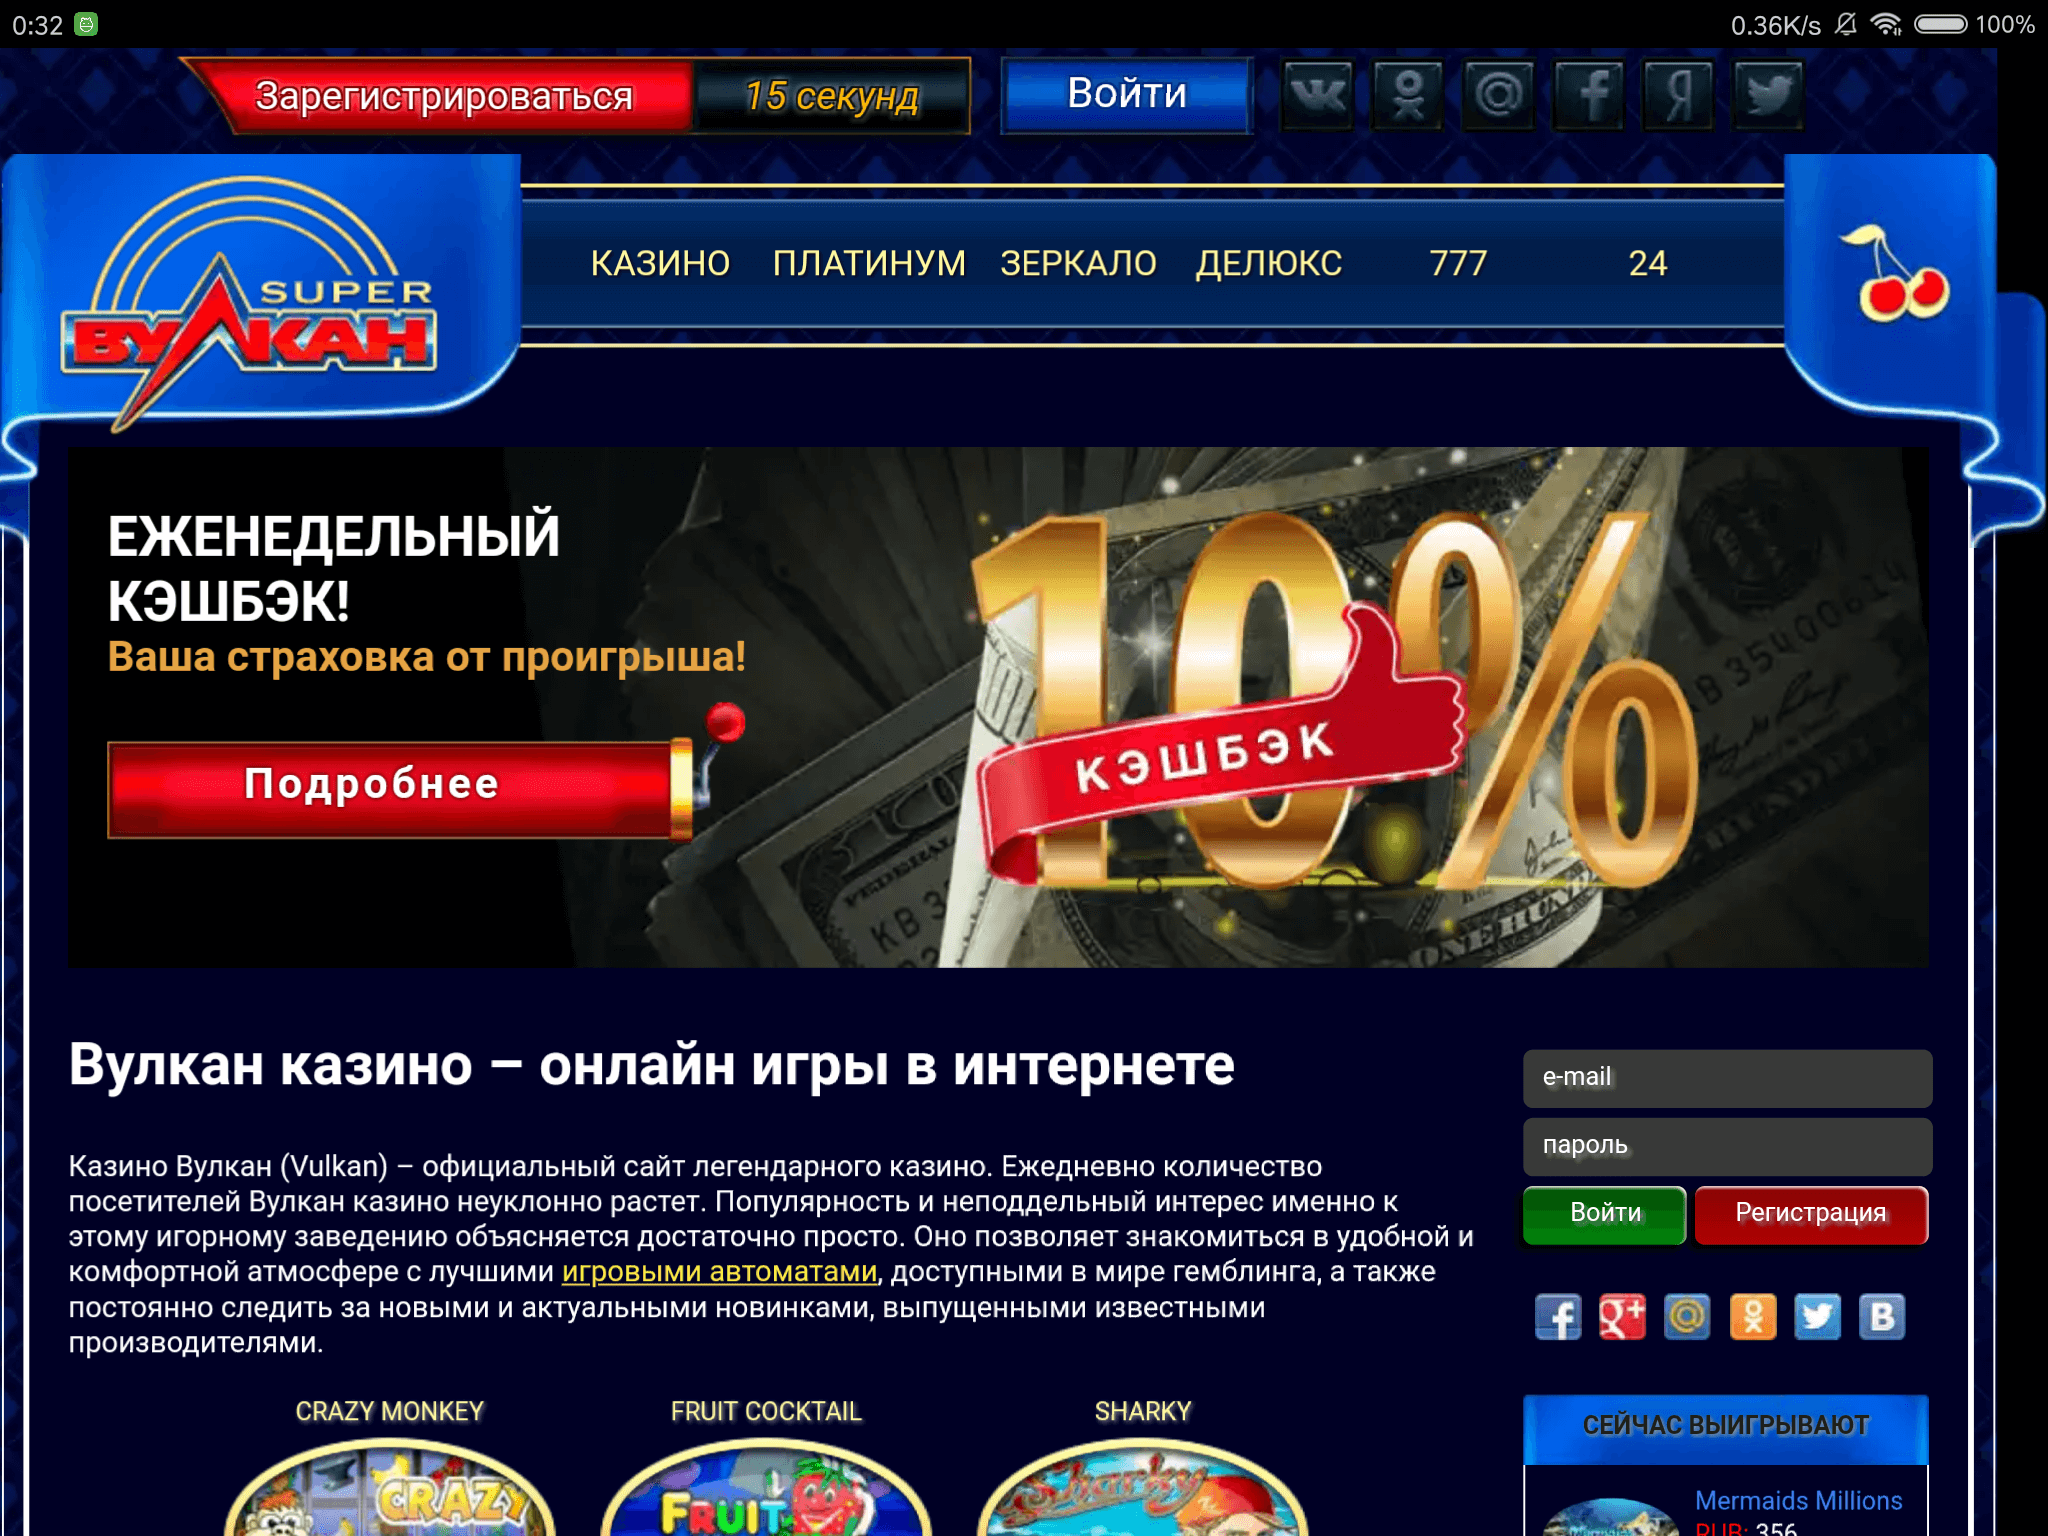 Online casino kz столото официальный сайт проверить билет русское лото по номеру